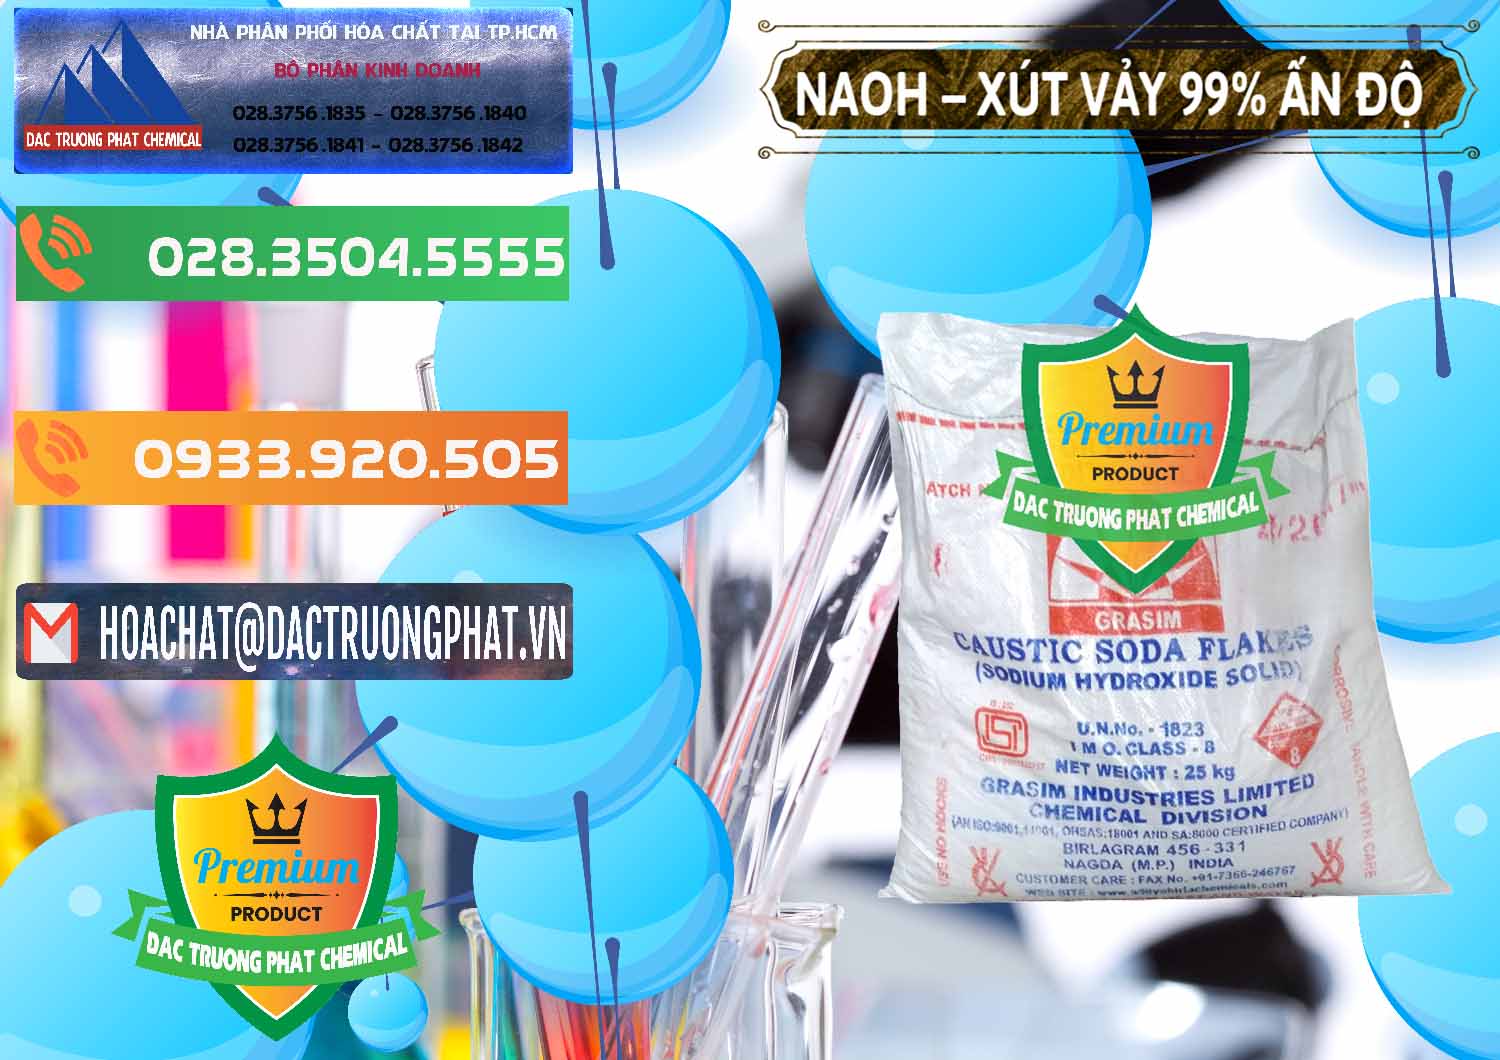 Cung cấp & bán Xút Vảy - NaOH Vảy 99% Aditya Birla Grasim Ấn Độ India - 0171 - Công ty cung cấp - kinh doanh hóa chất tại TP.HCM - hoachatxulynuoc.com.vn